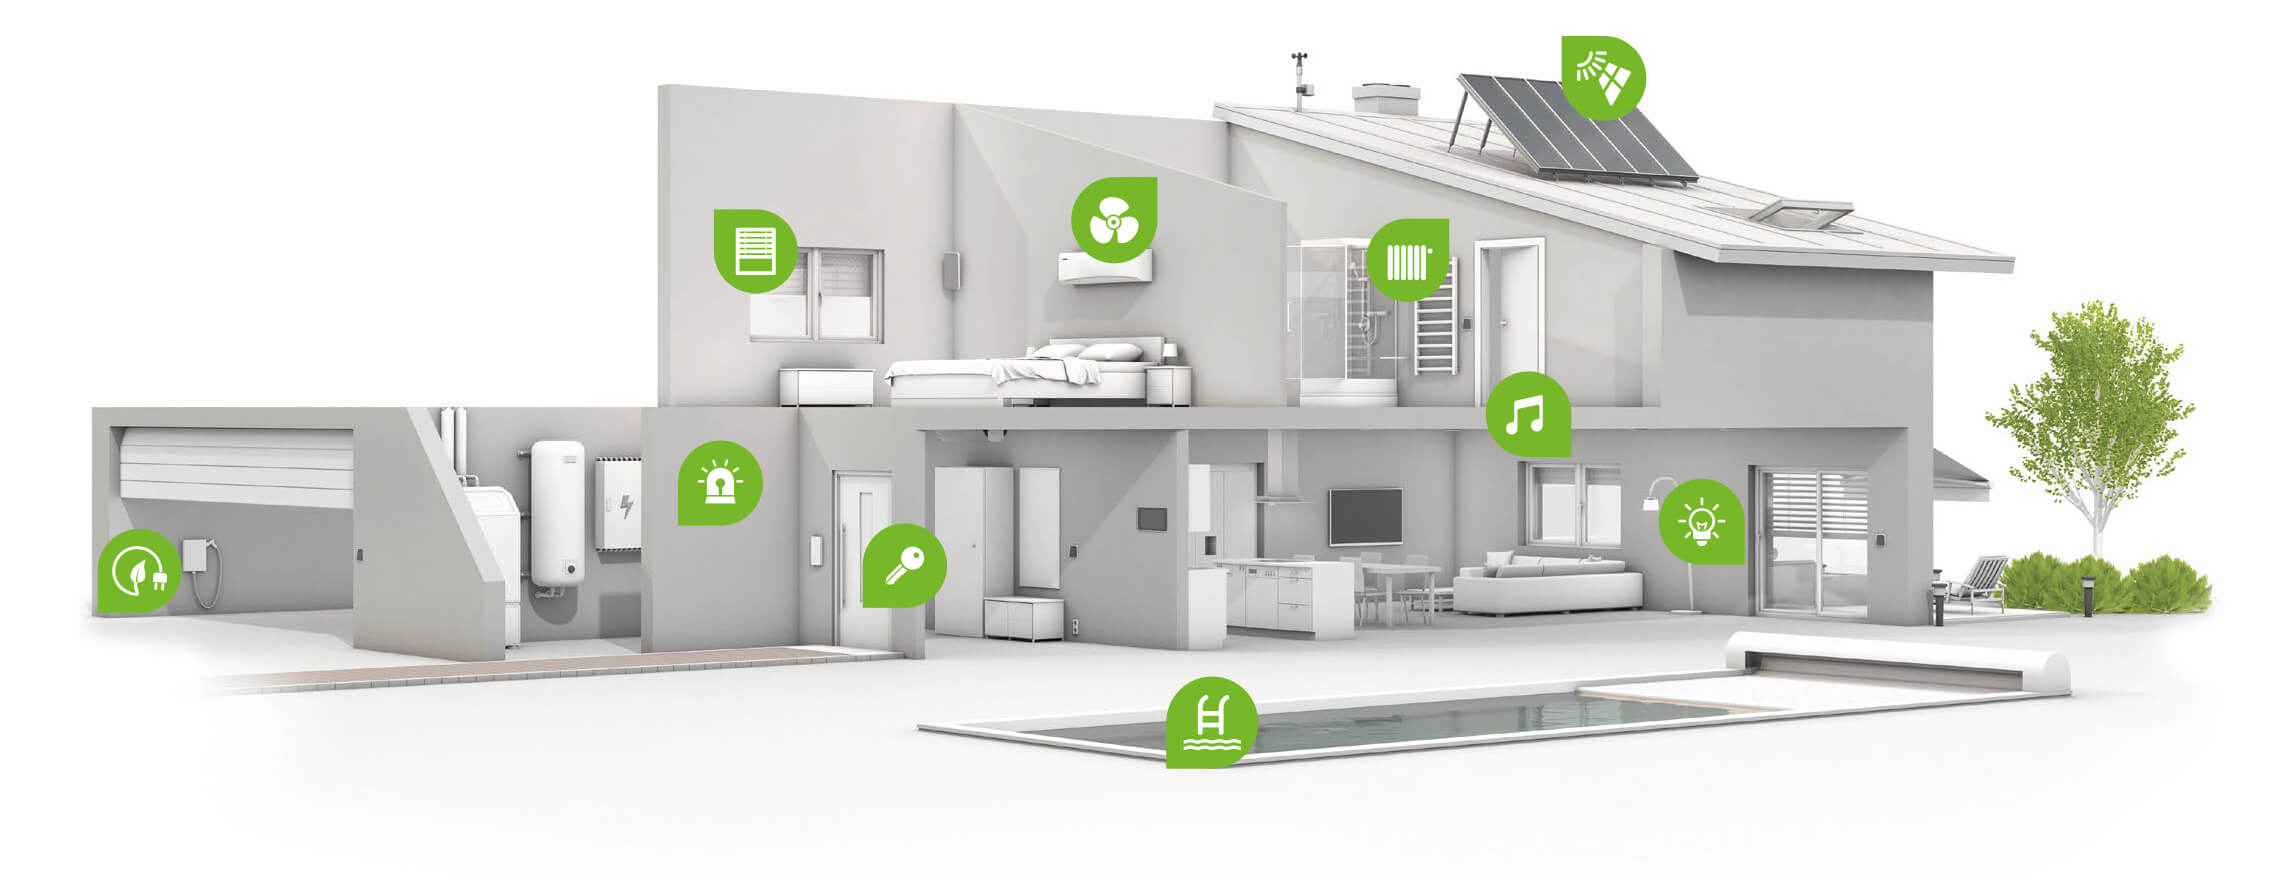 Smarta hem-inte bara automatiseret ditt liv, men också hjälpa till att övervaka hälsan hos